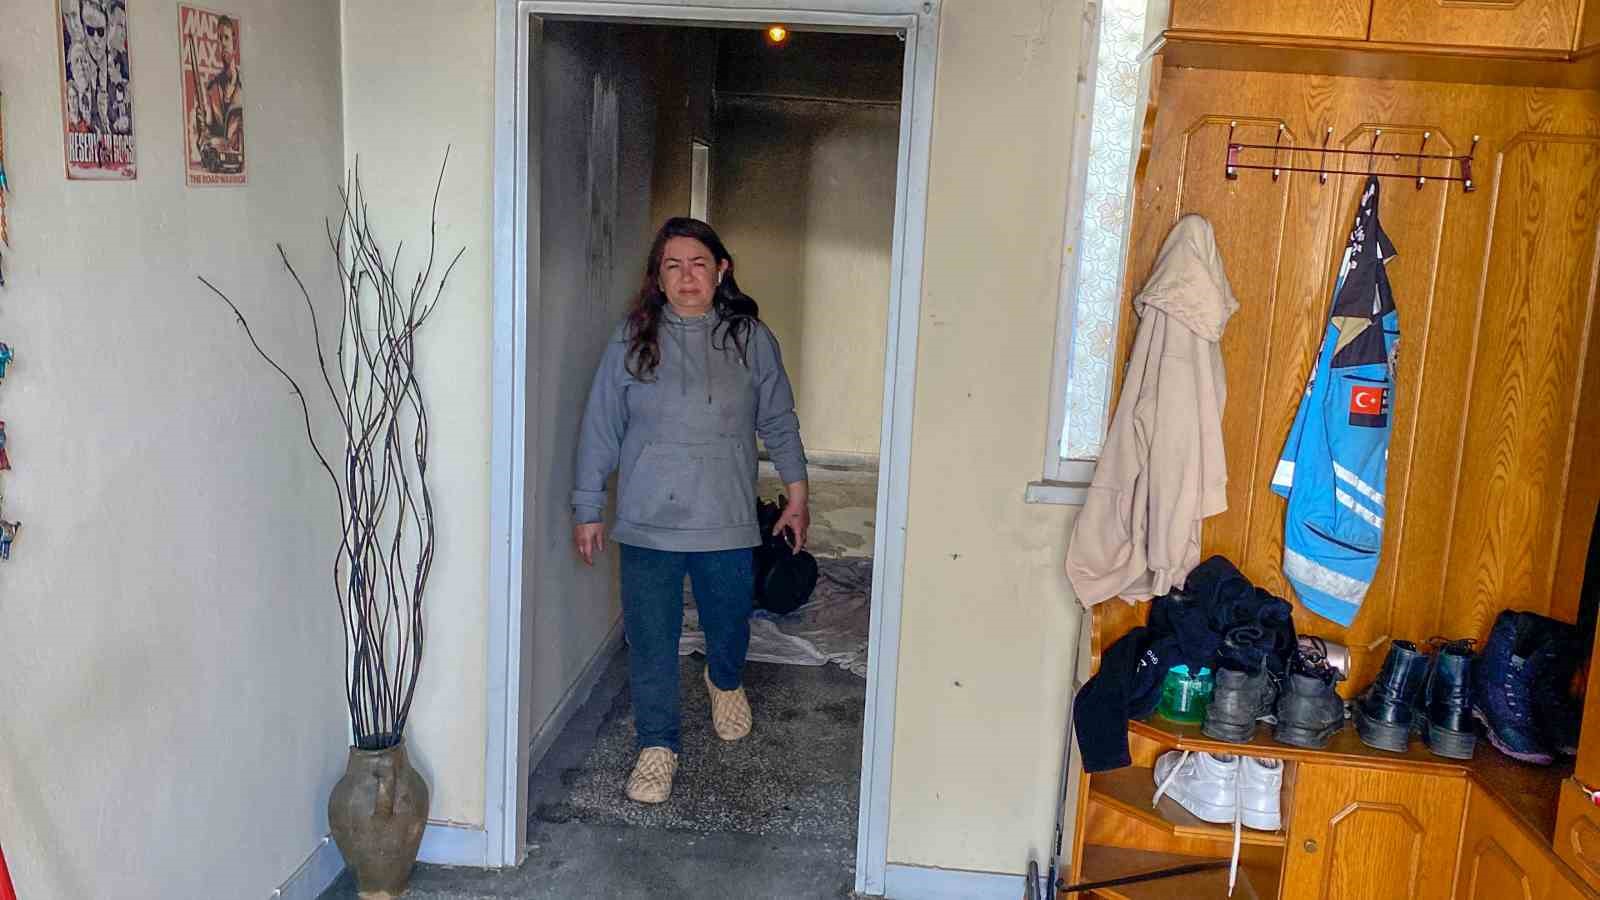 Evinin yandığını gören kadın kurye sinir krizi geçirdi
